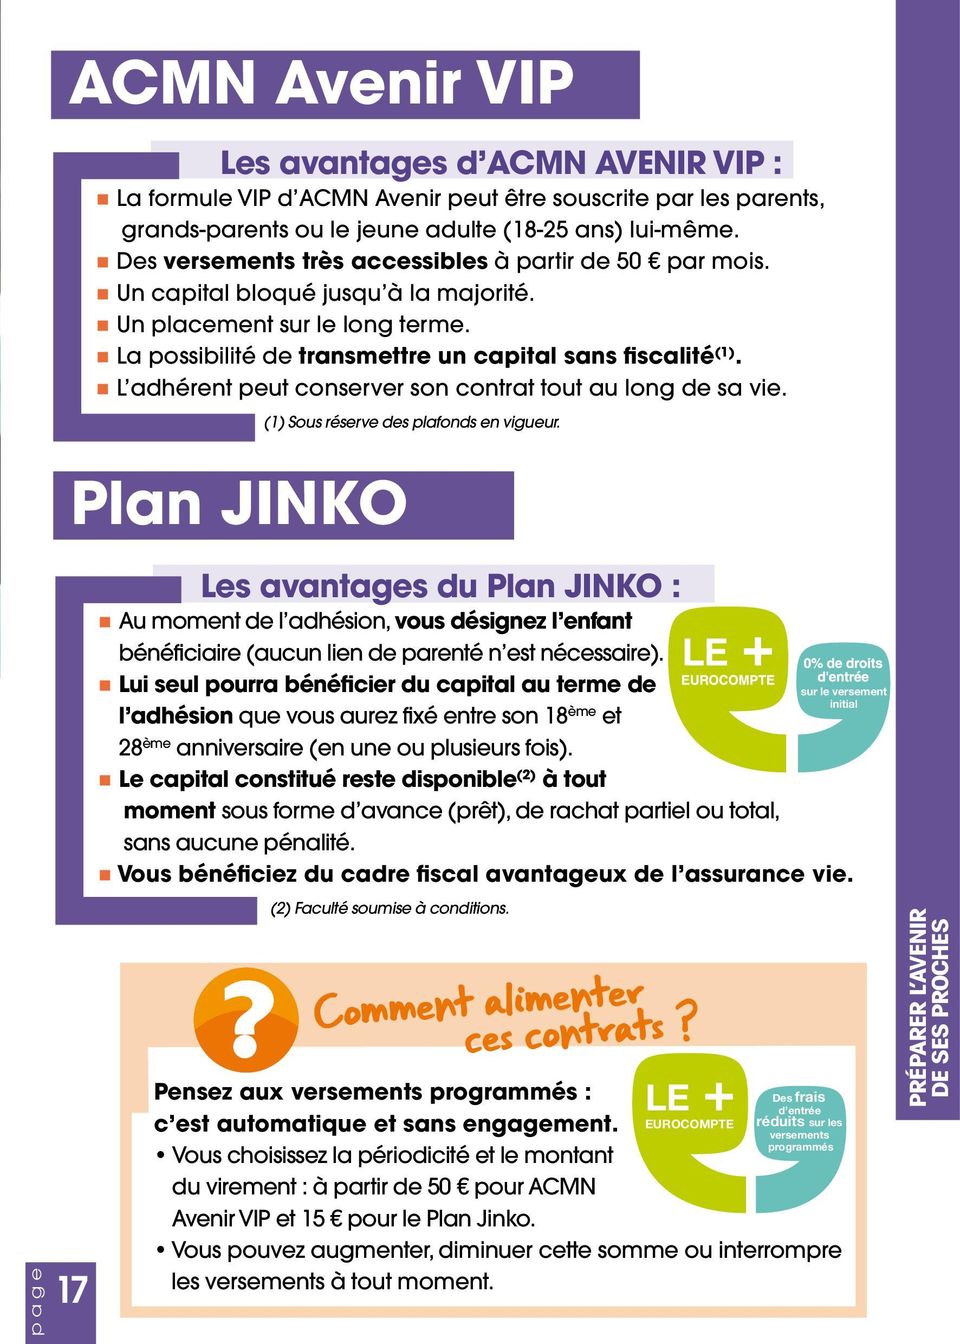 L adhérent peut conserver son contrat tout au long de sa vie. Plan JINKO (1) Sous réserve des plafonds en vigueur.